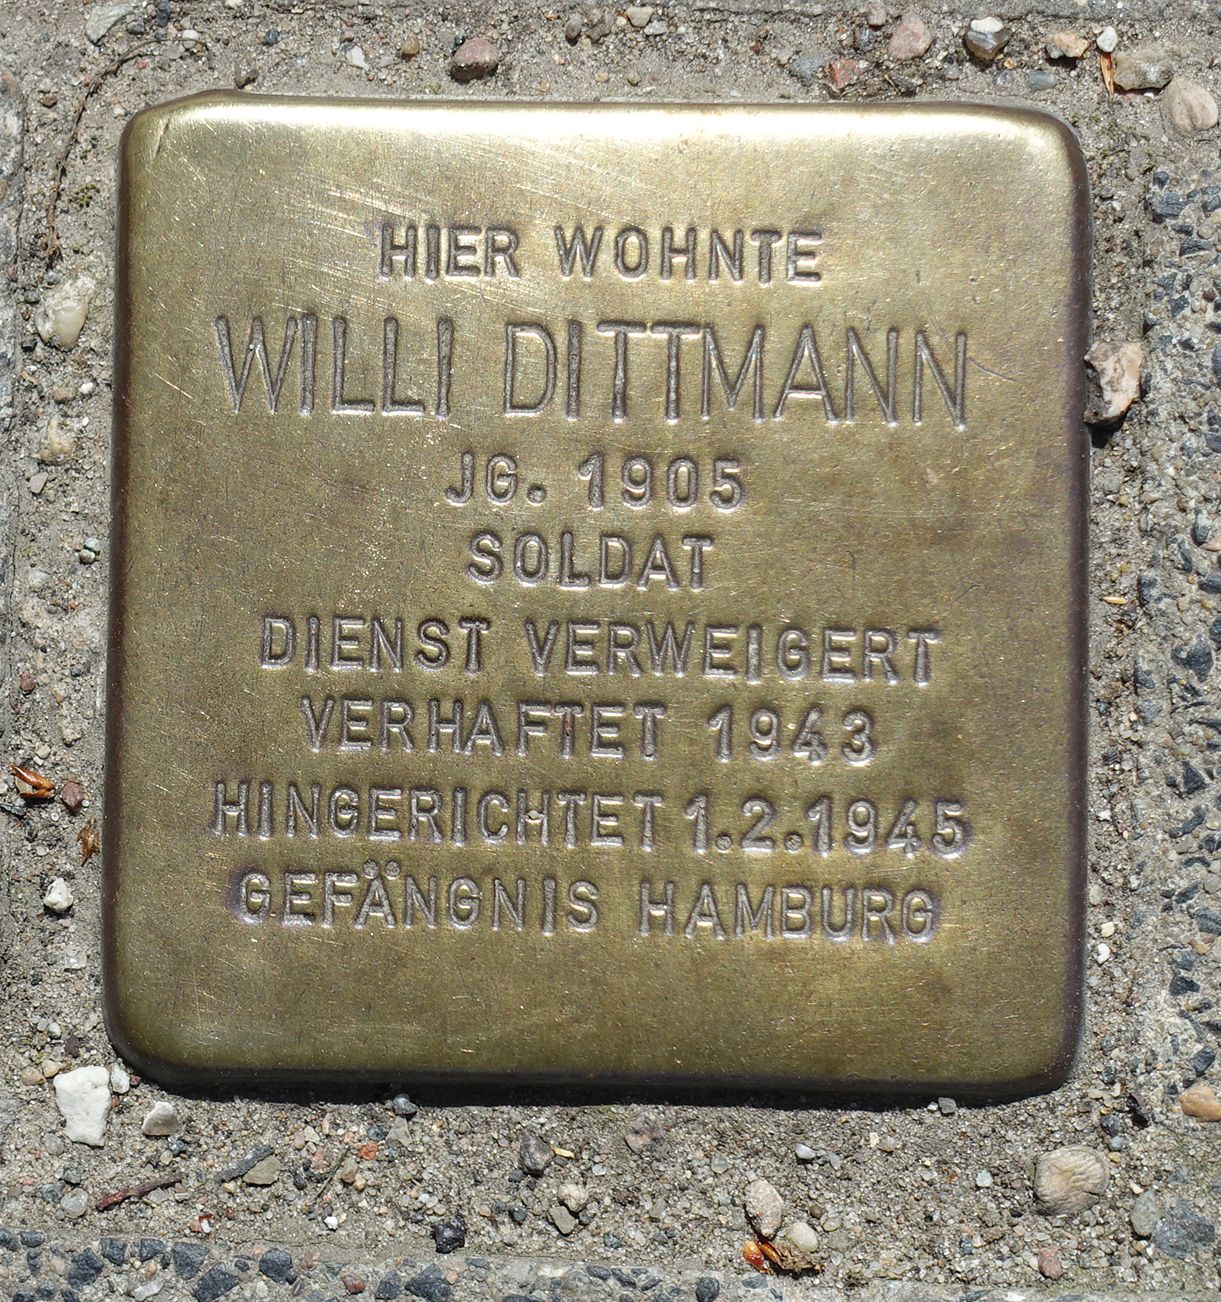 Stolperstein in Kiel. Hier wohnte Willi Dittmann. Jg. 1905, Soldat, Dienst verweigert, verhaftet 1943, hingerichtet 1.2.1945, Gefängnis Hamburg